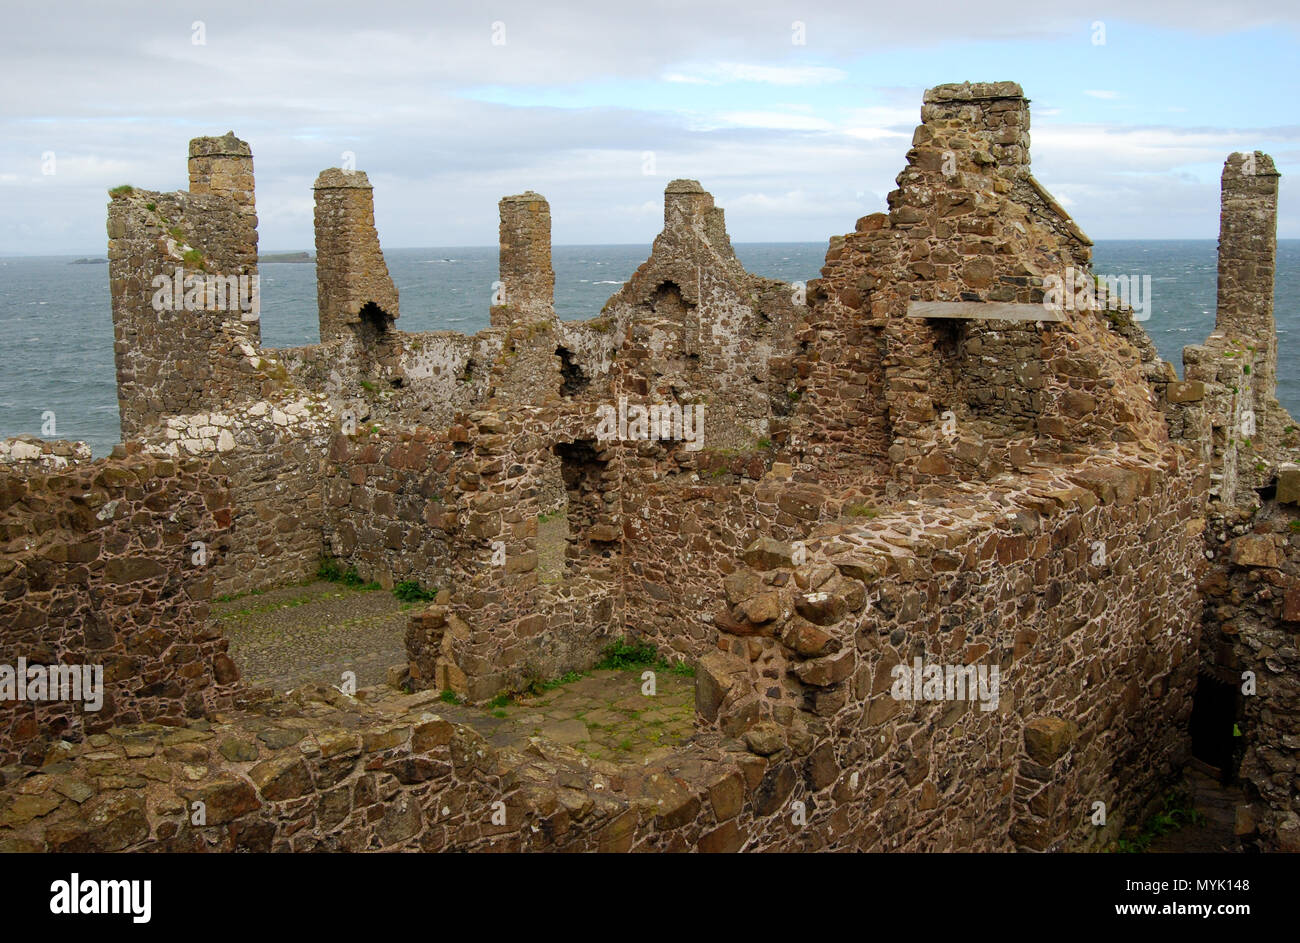 Castillo de Dunluce Castillo Irlandés medieval en la costa de Antrim, Irlanda del Norte Foto de stock